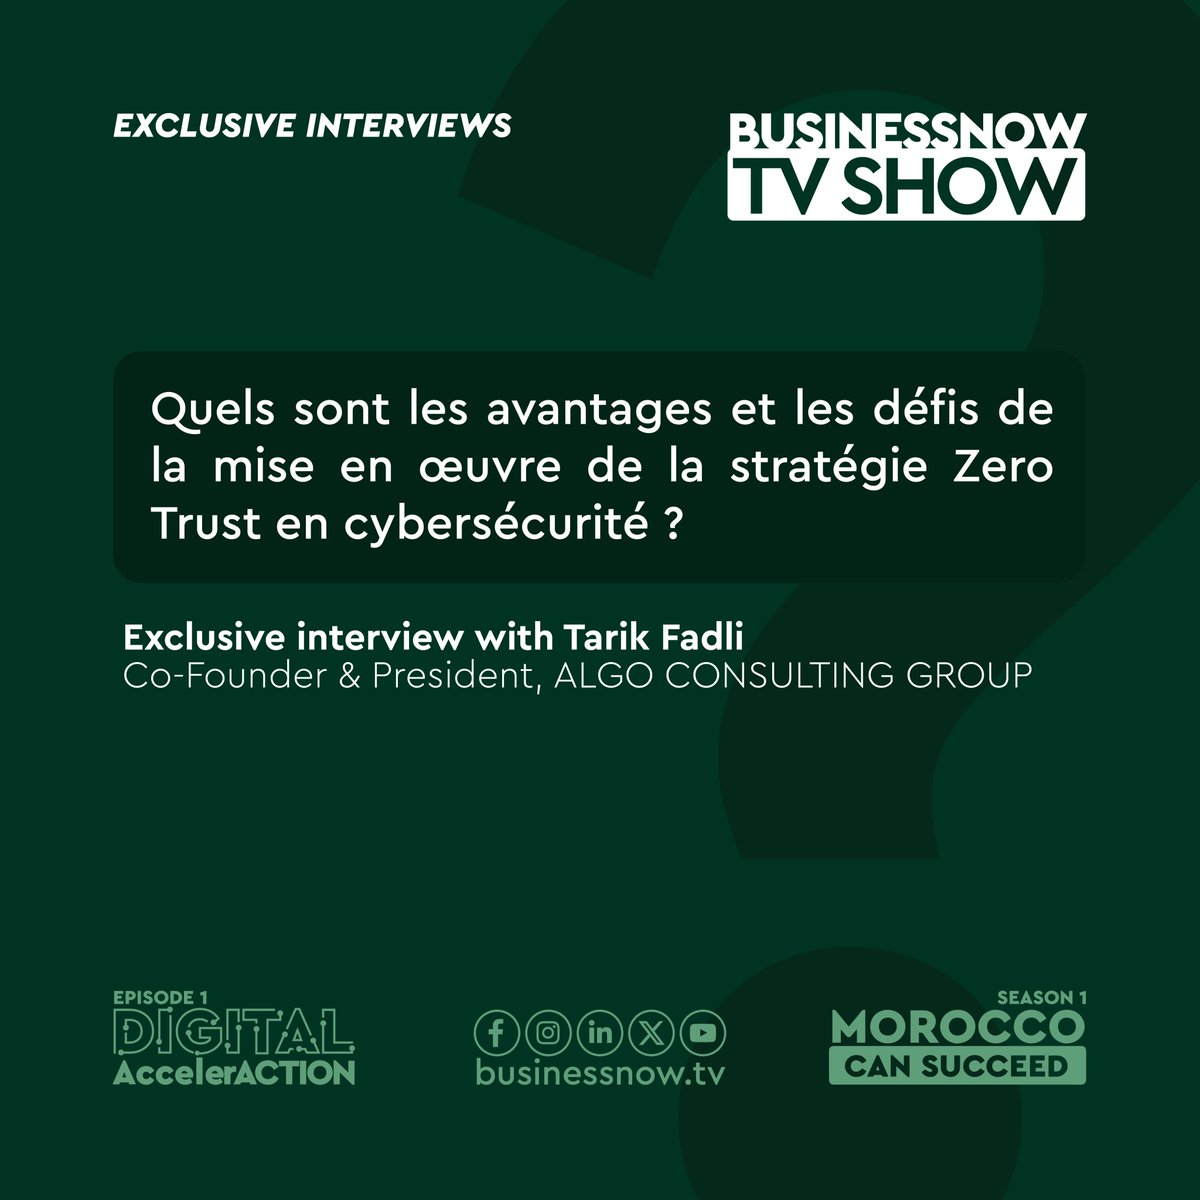 🛡️ #Zero Trust en #Cybersécurité : une nécessité 🌐 

TARIK FADLI, CO-FOUNDER et PRESIDENT d’ALGO CONSULTING GROUP, vous livre ses réflexions dans une Exclusive Interview sur le BUSINESSNOW TVSHOW.

#MoroccoCanSucceed